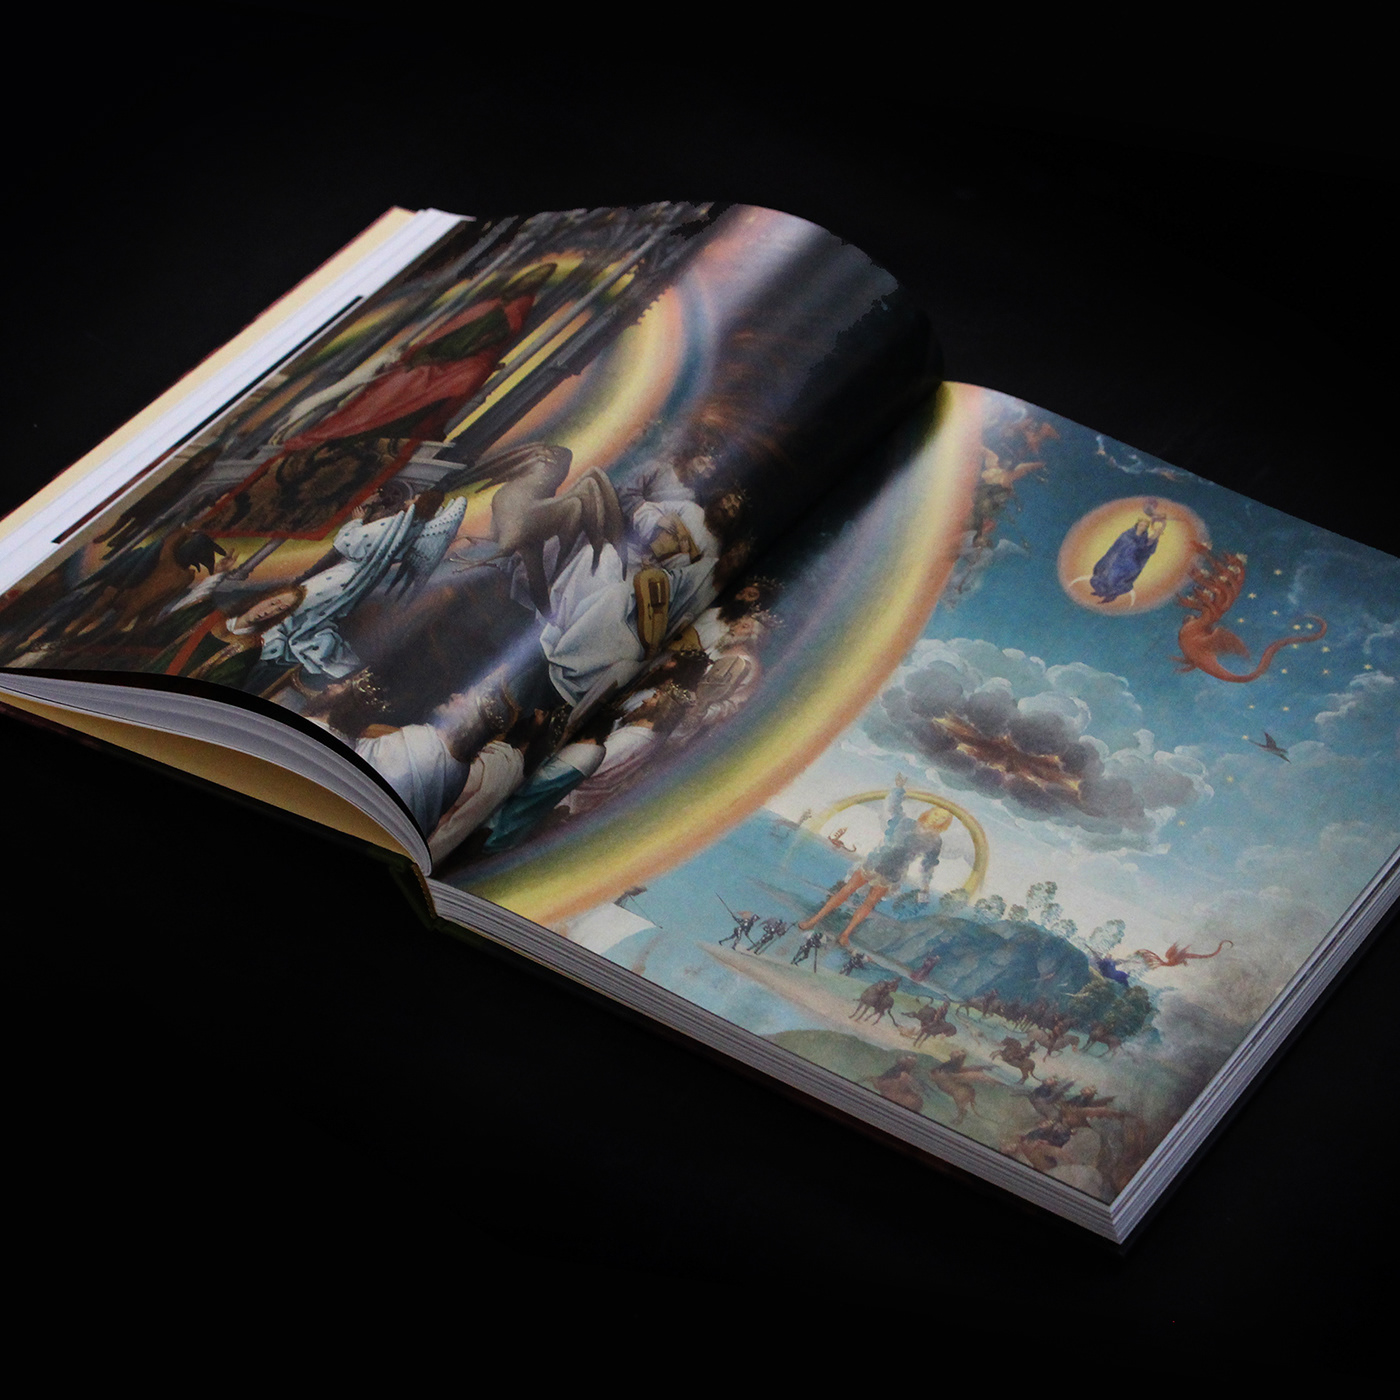 artbook Bookdesign coverdesign hotfoil Artbooks book cover bruges hansmemling museabrugge